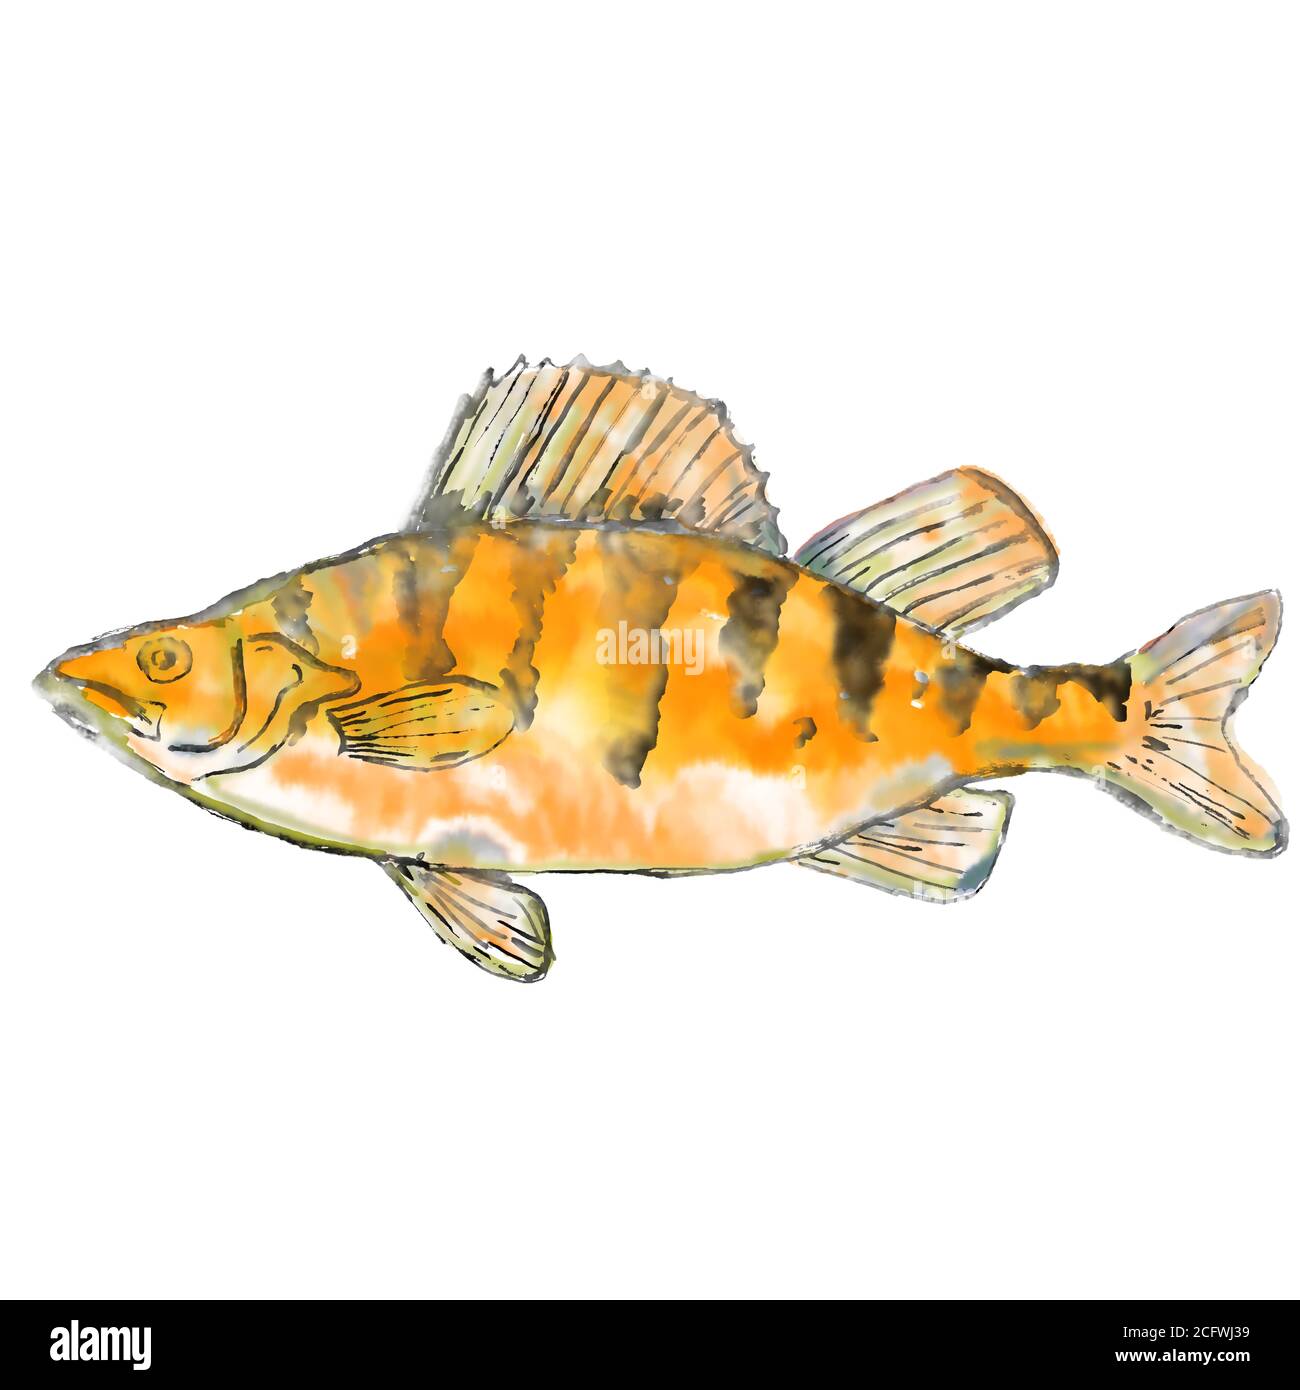 Peinture aquarelle illustration d'une perchaude Perca flavescens, perchaude rayée, perchaude ou prédicate, un poisson perciforme d'eau douce vu fro Banque D'Images